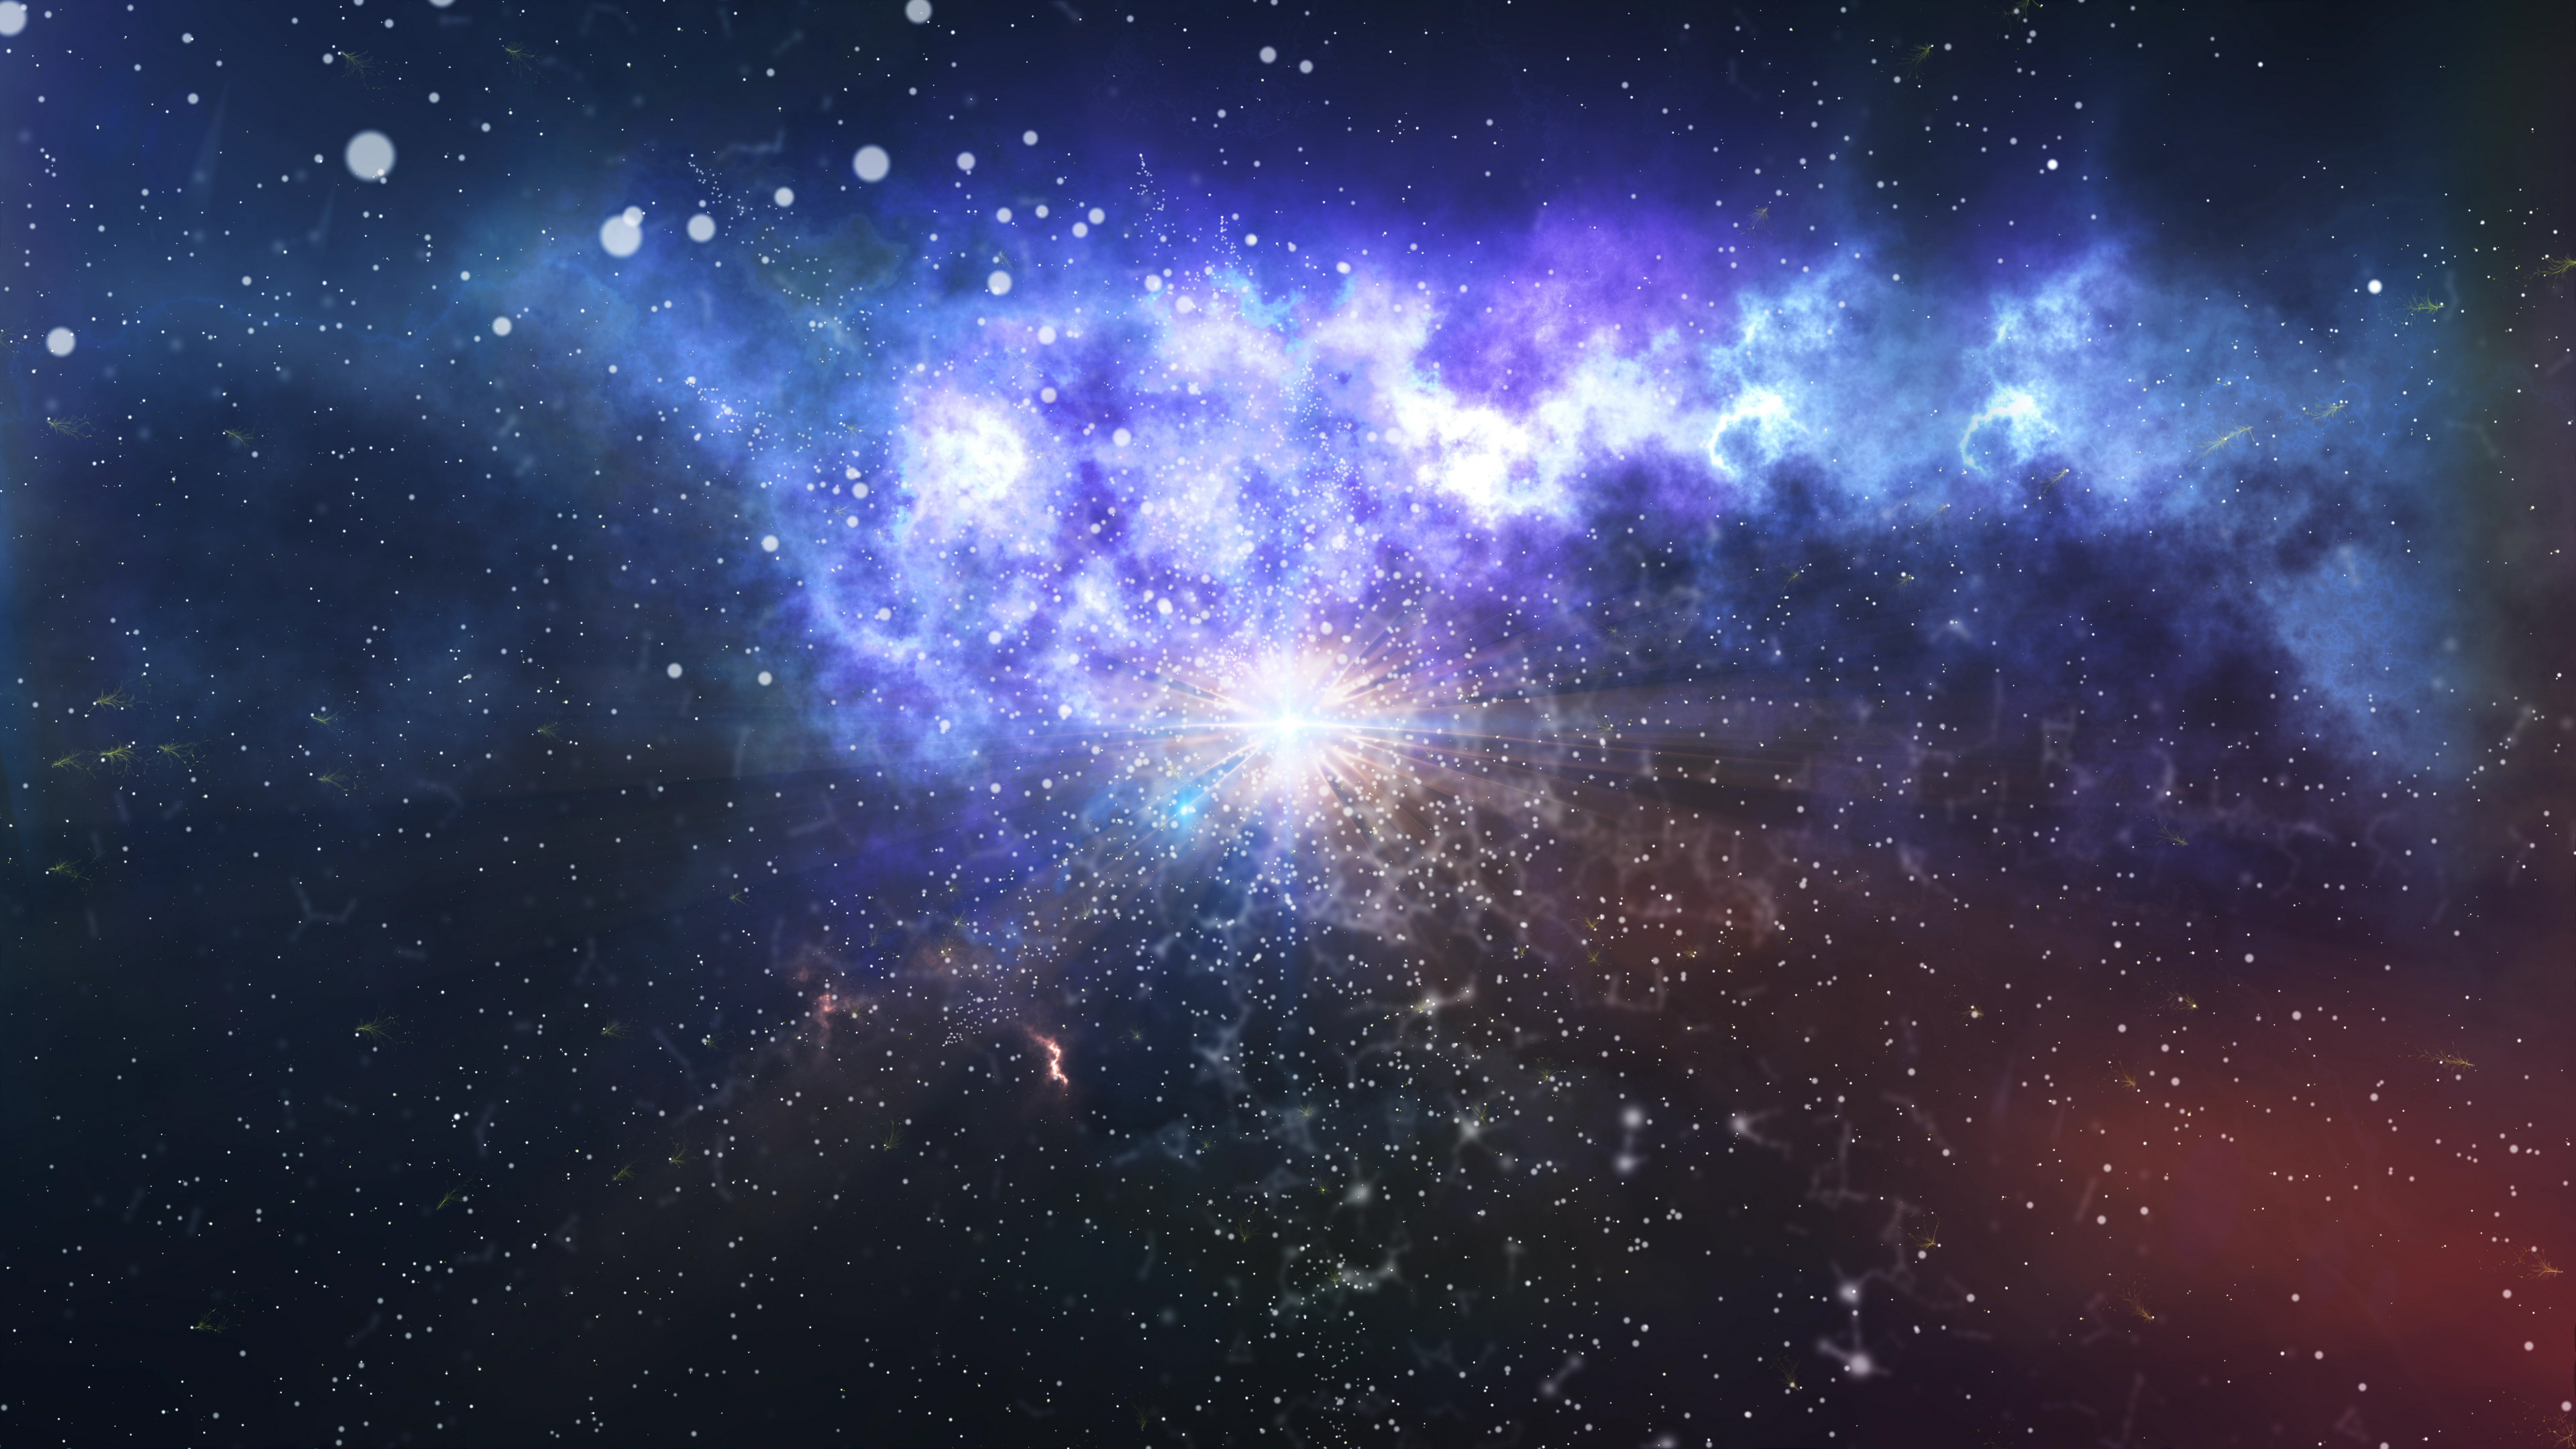 dark matter without big bang